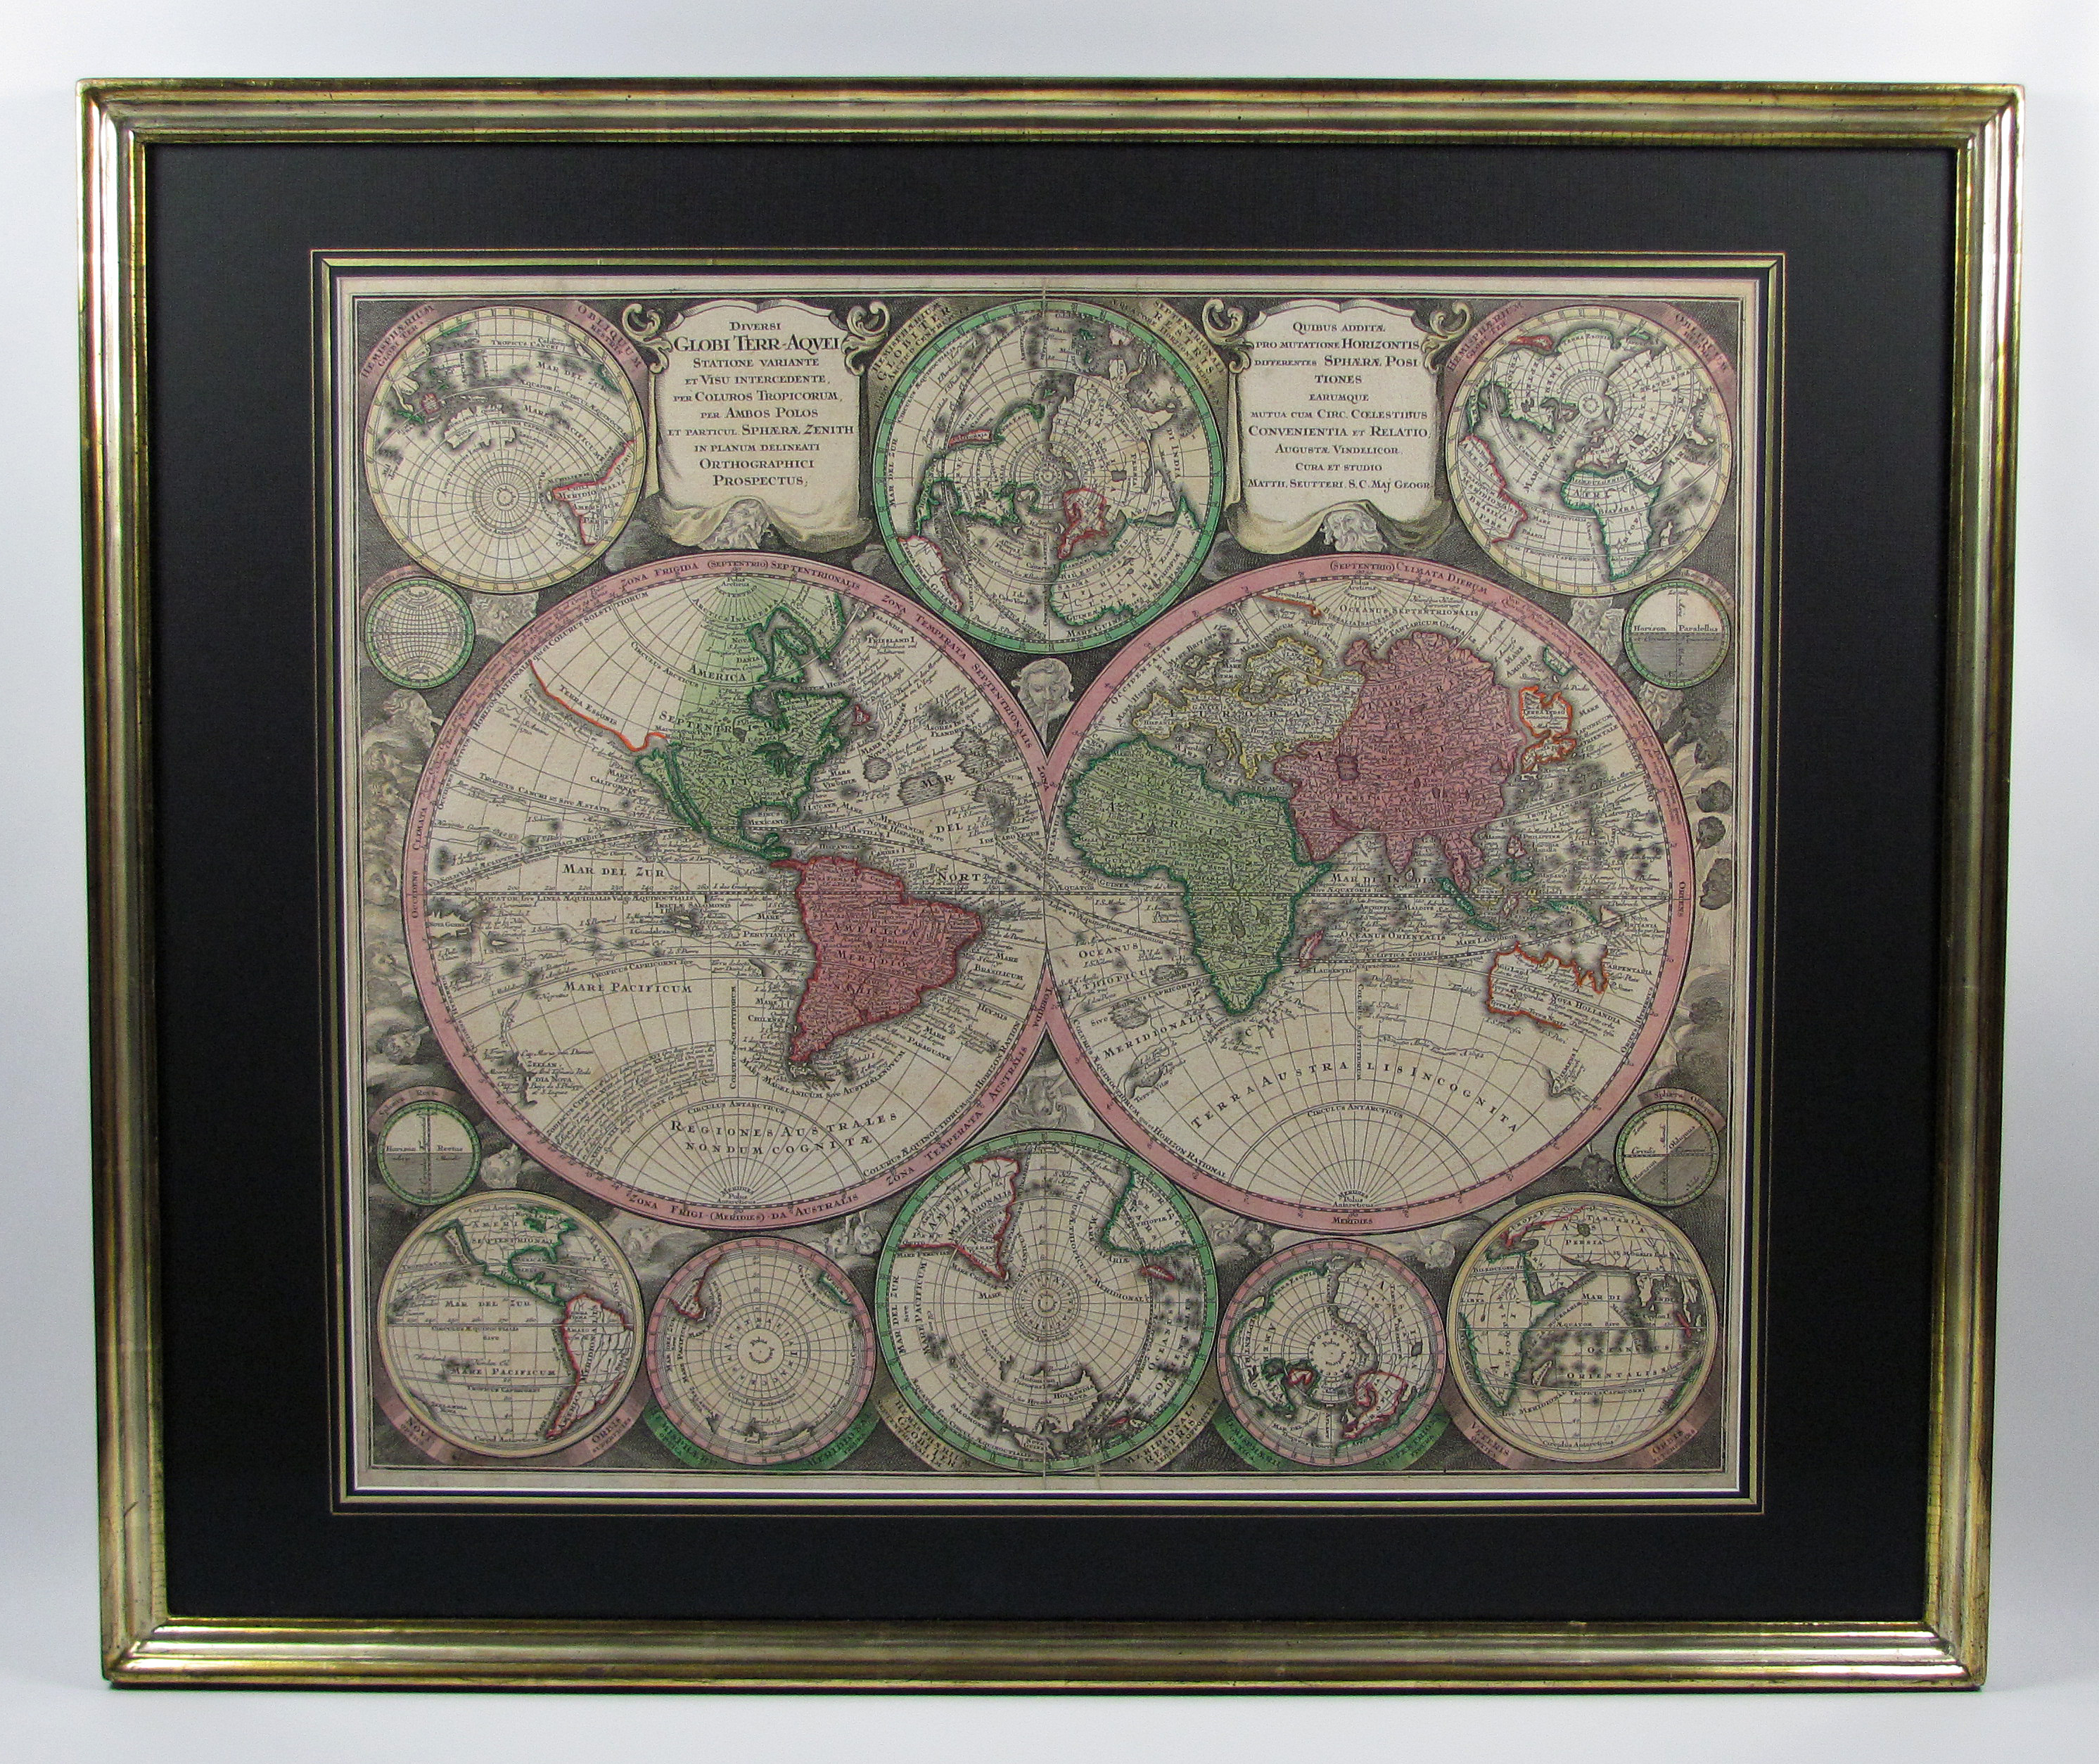 Anonymus Weltkarte, 4 Kontinentkarten und Himmelskarte.